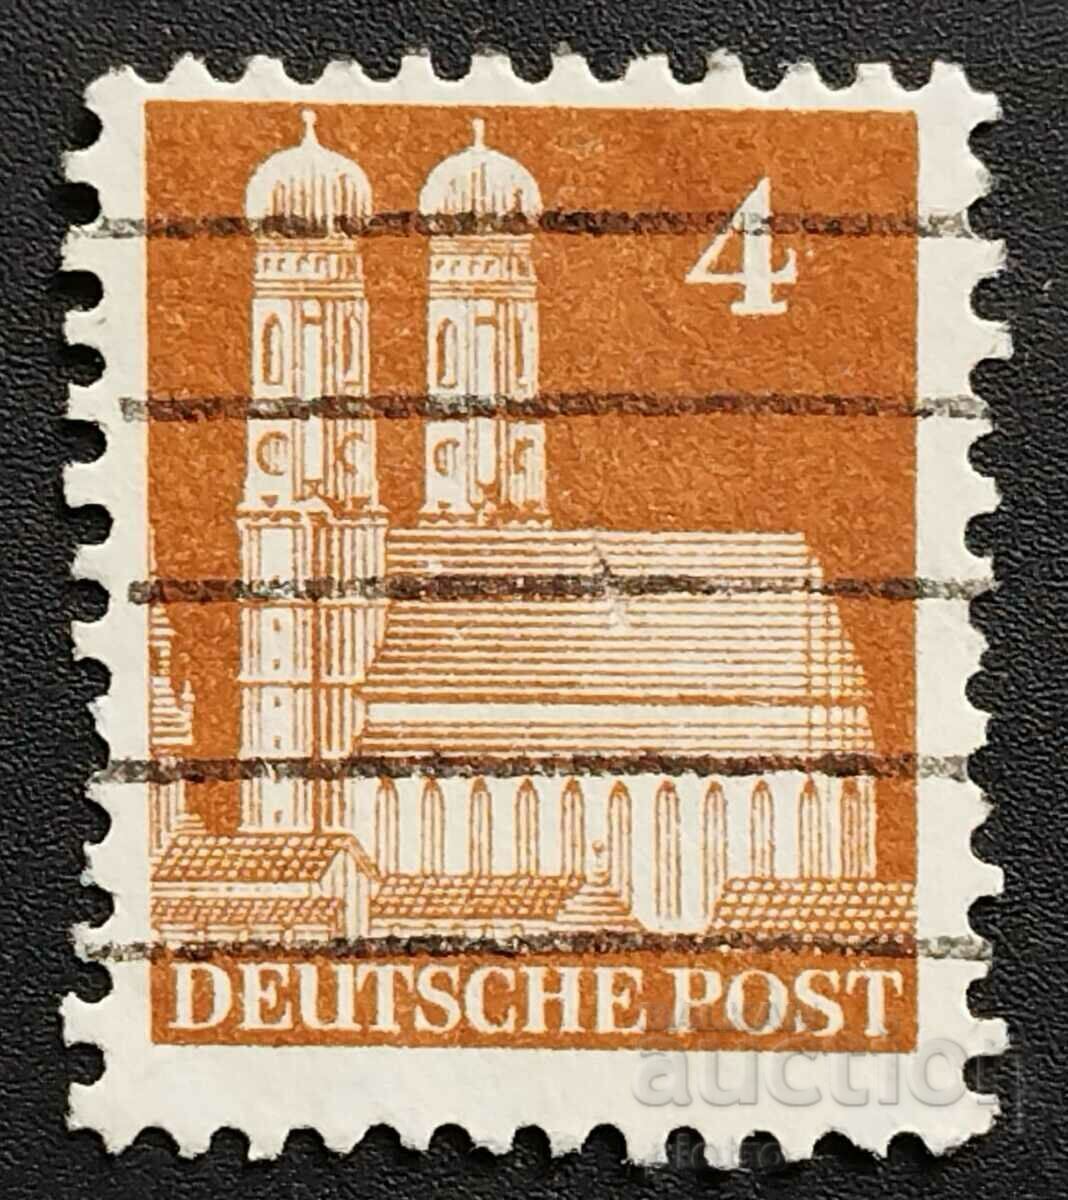 Βρετανική - Αμερικάνικη ζώνη 1948 4pf. Γερμανικά κτίρια II